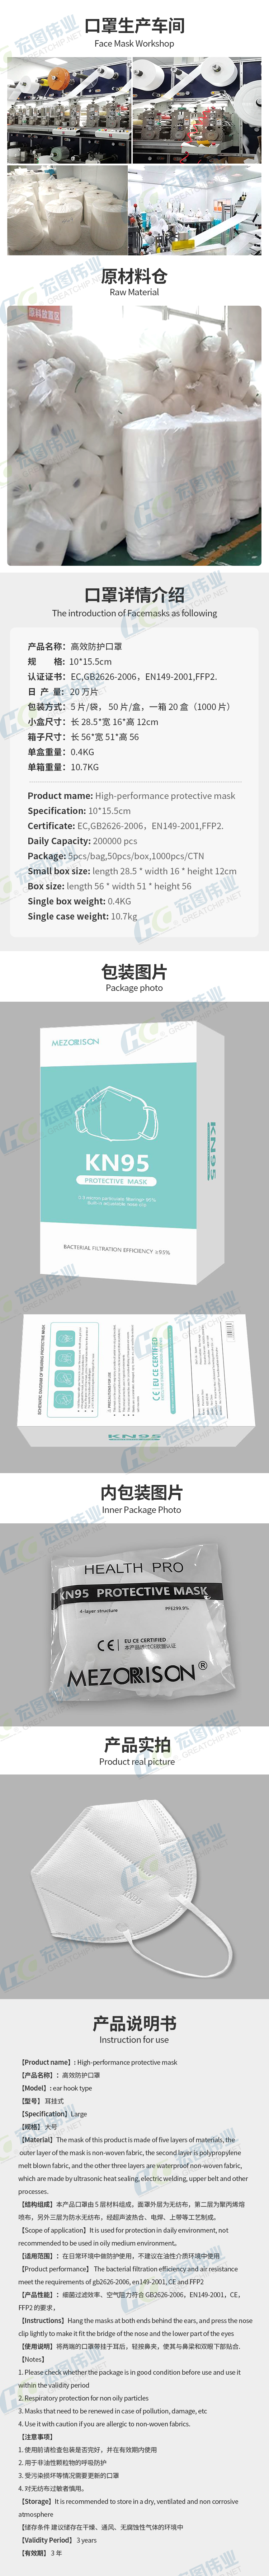 KN95-details